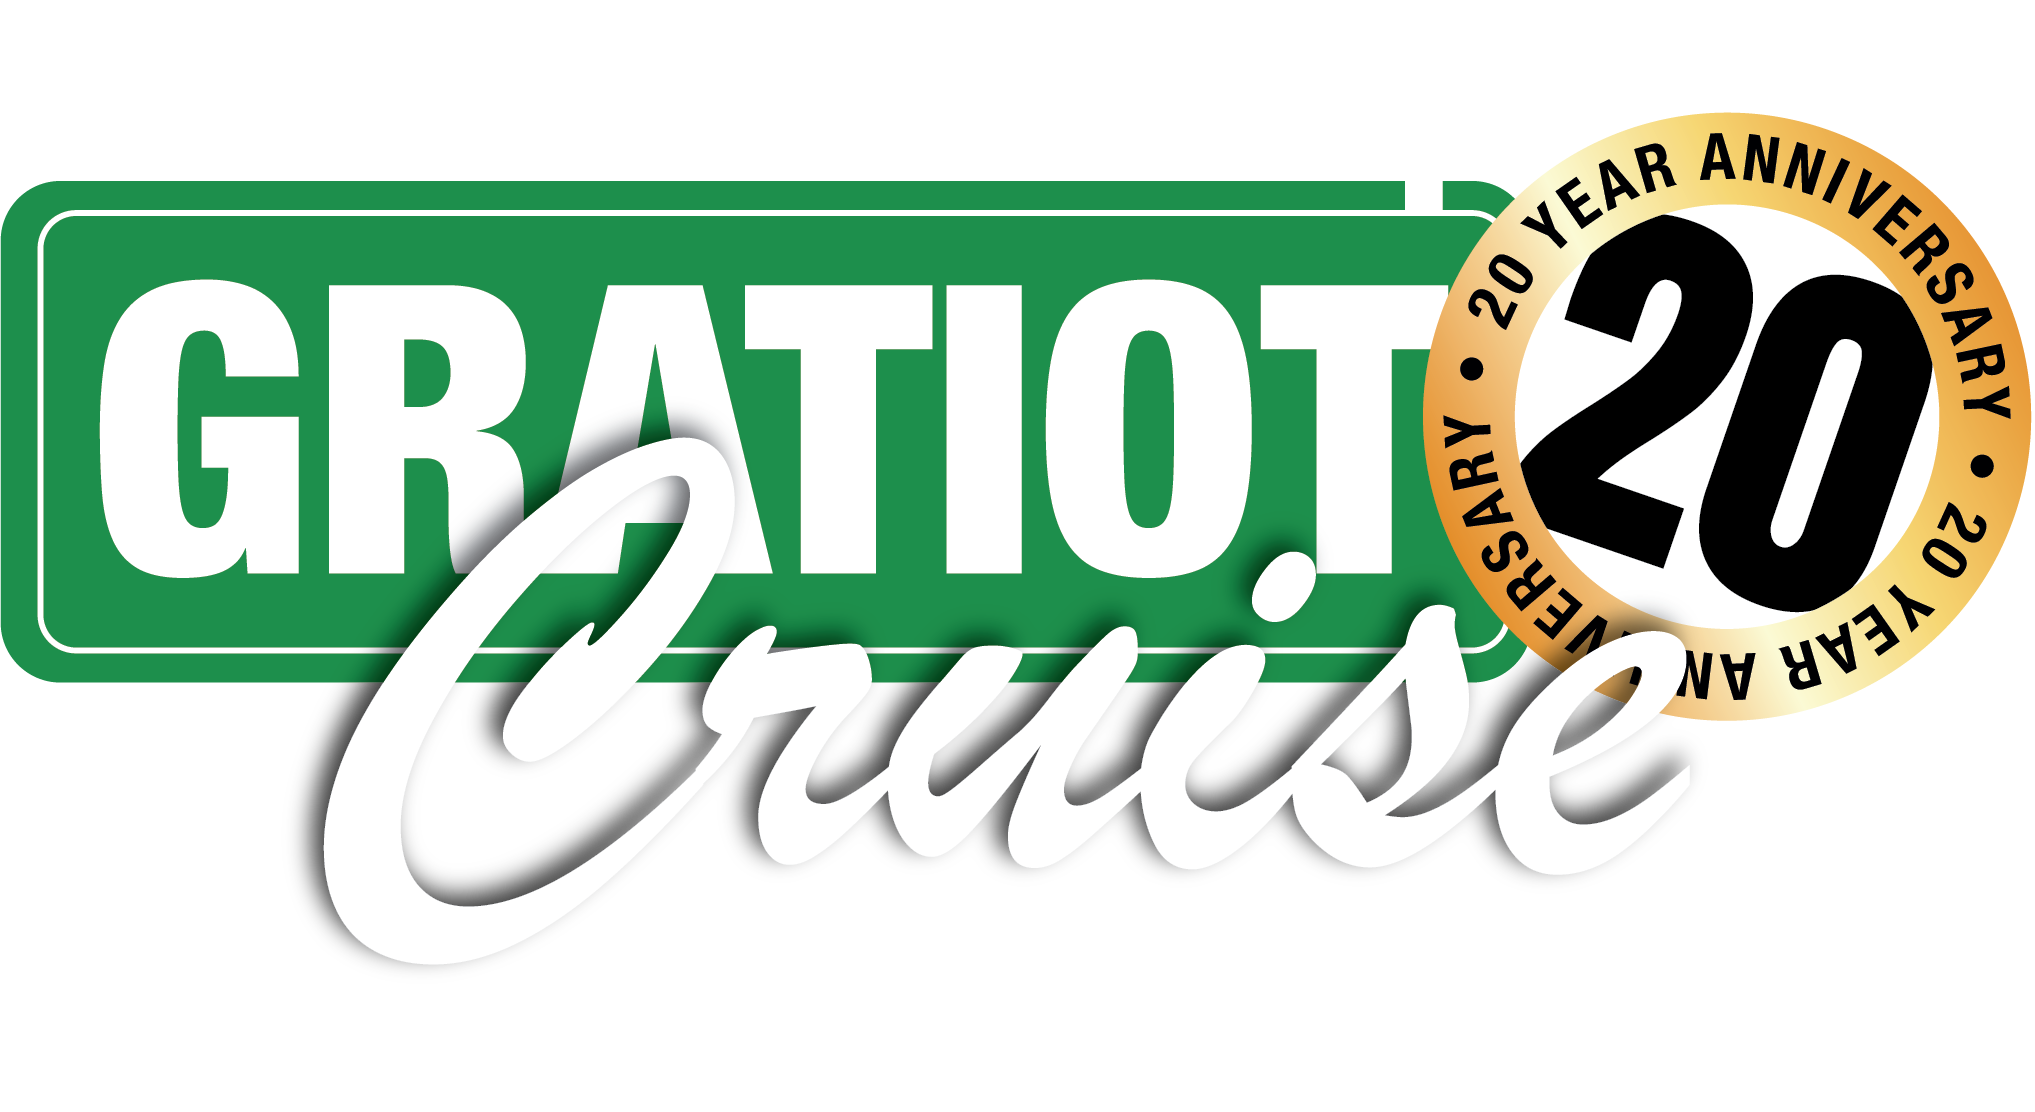 Clinton Township Gratiot Cruise Logo